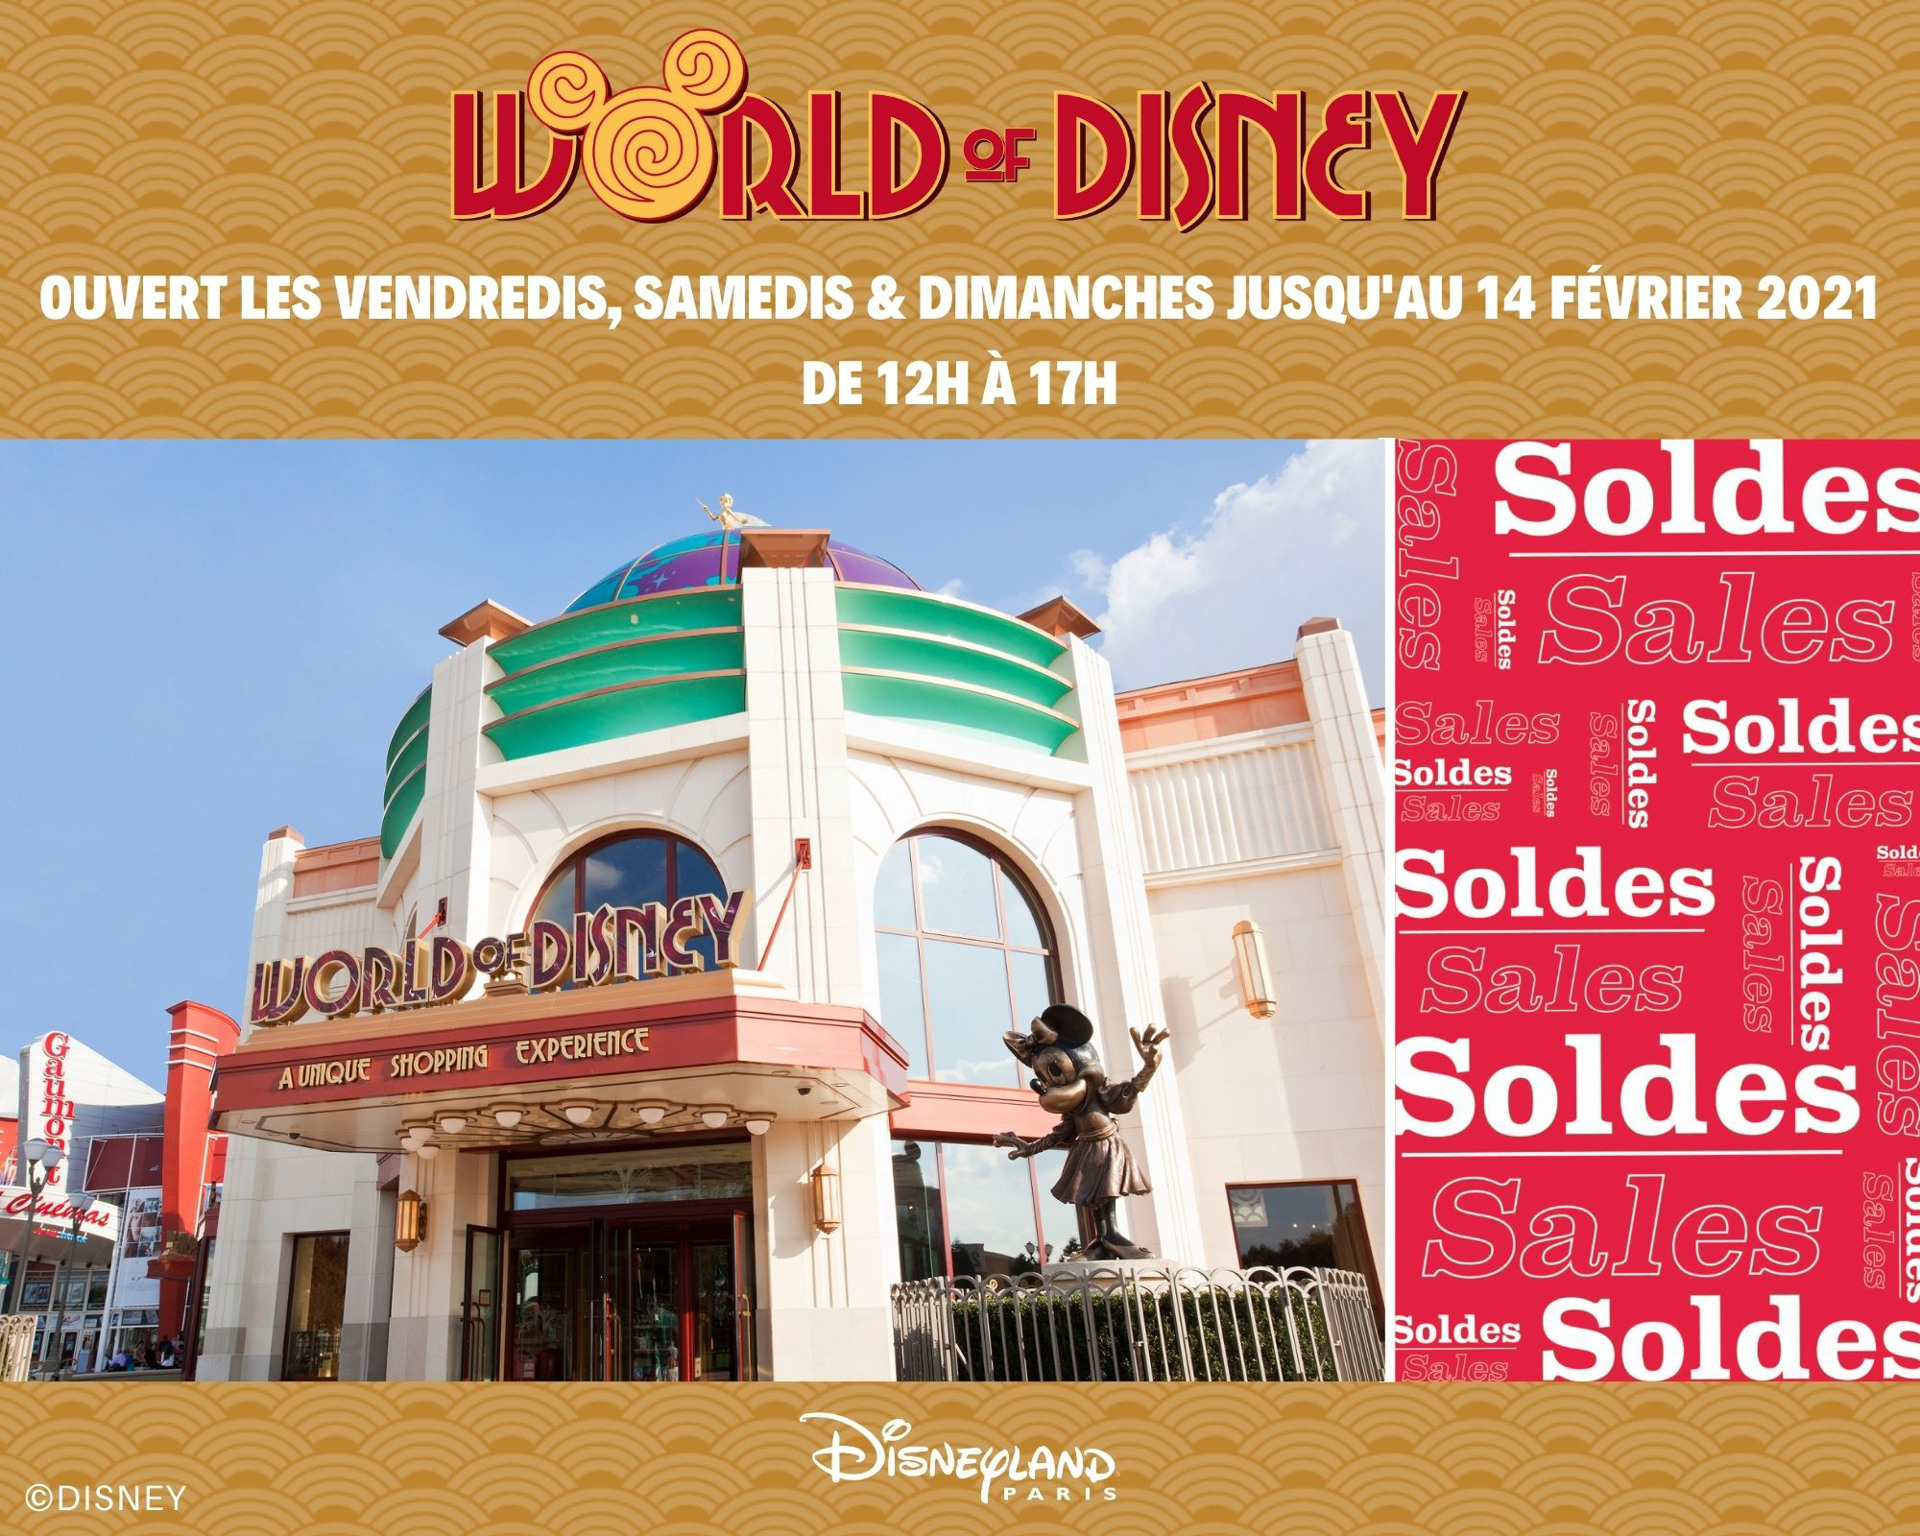 La boutique World of Disney rouvre ses portes du 29 janvier au 14 février